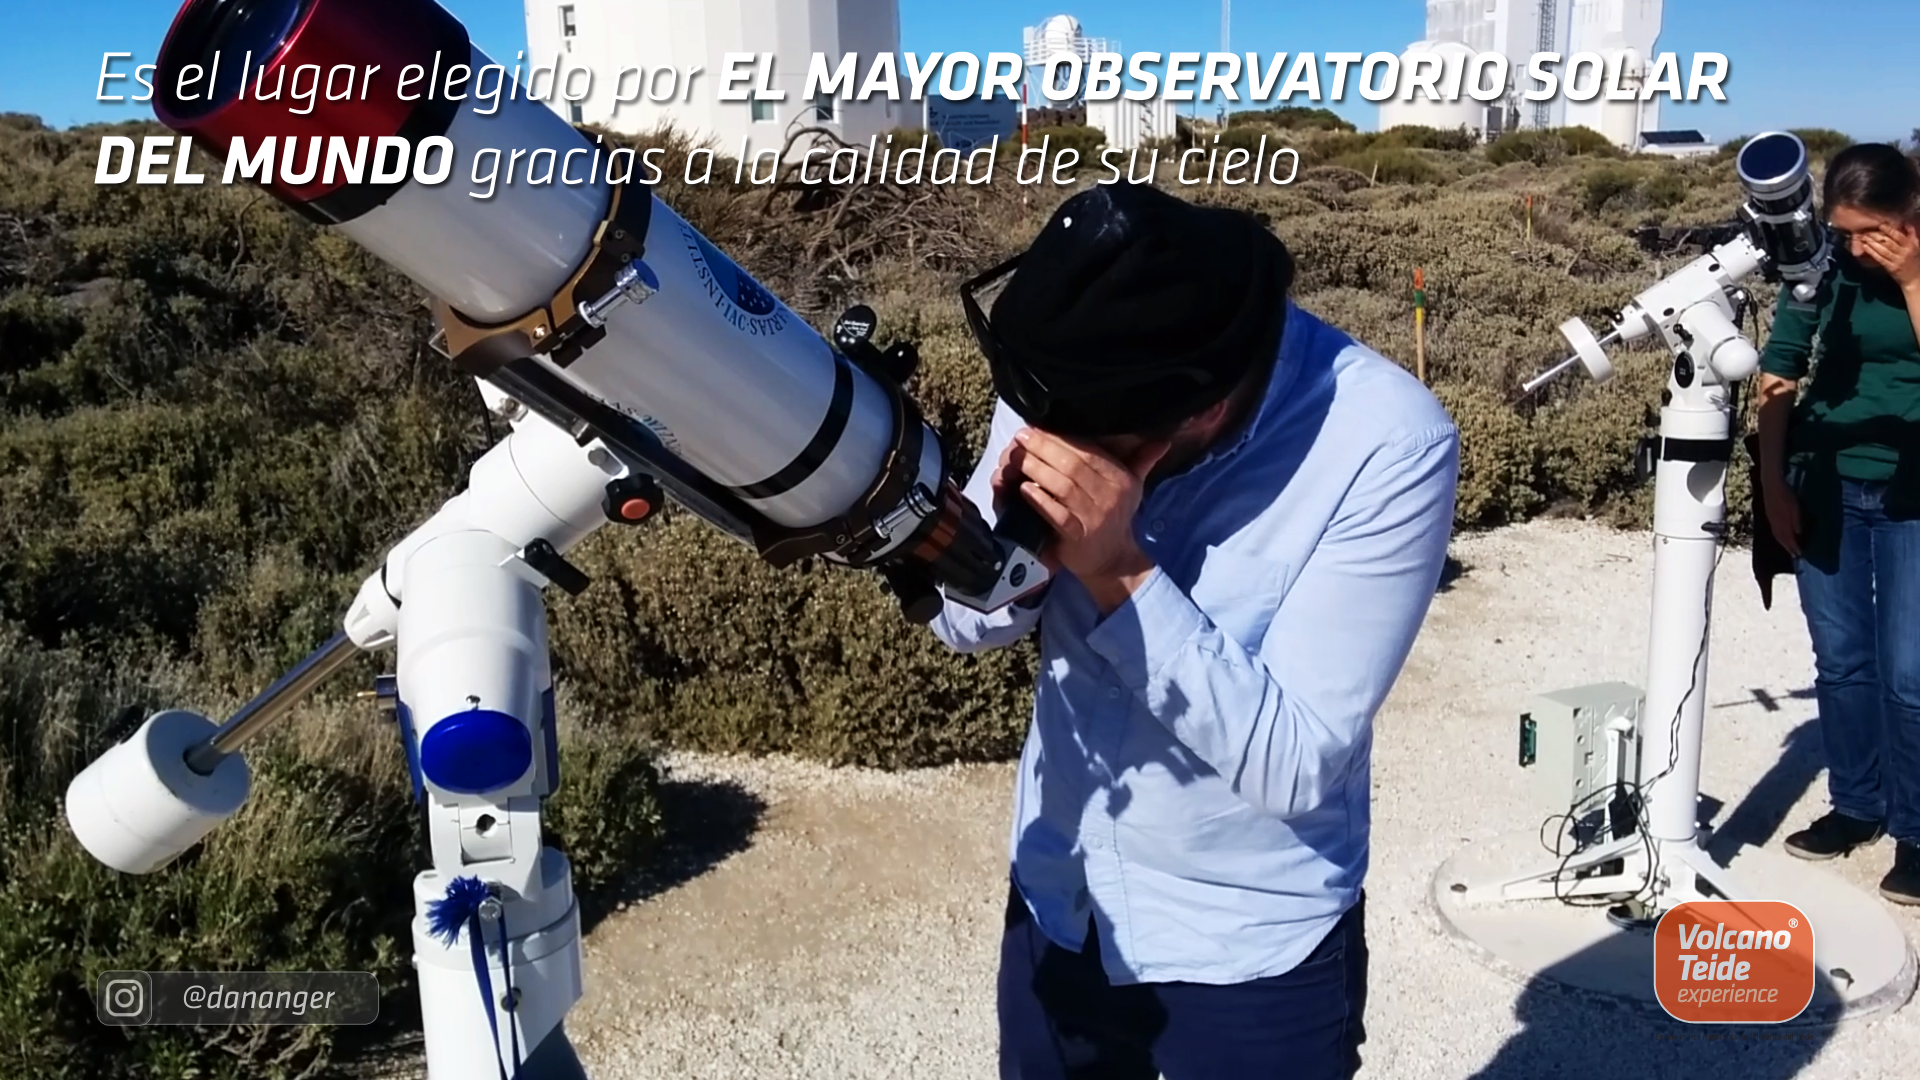 ¿Cómo se puede visitar el Observatorio del Teide?